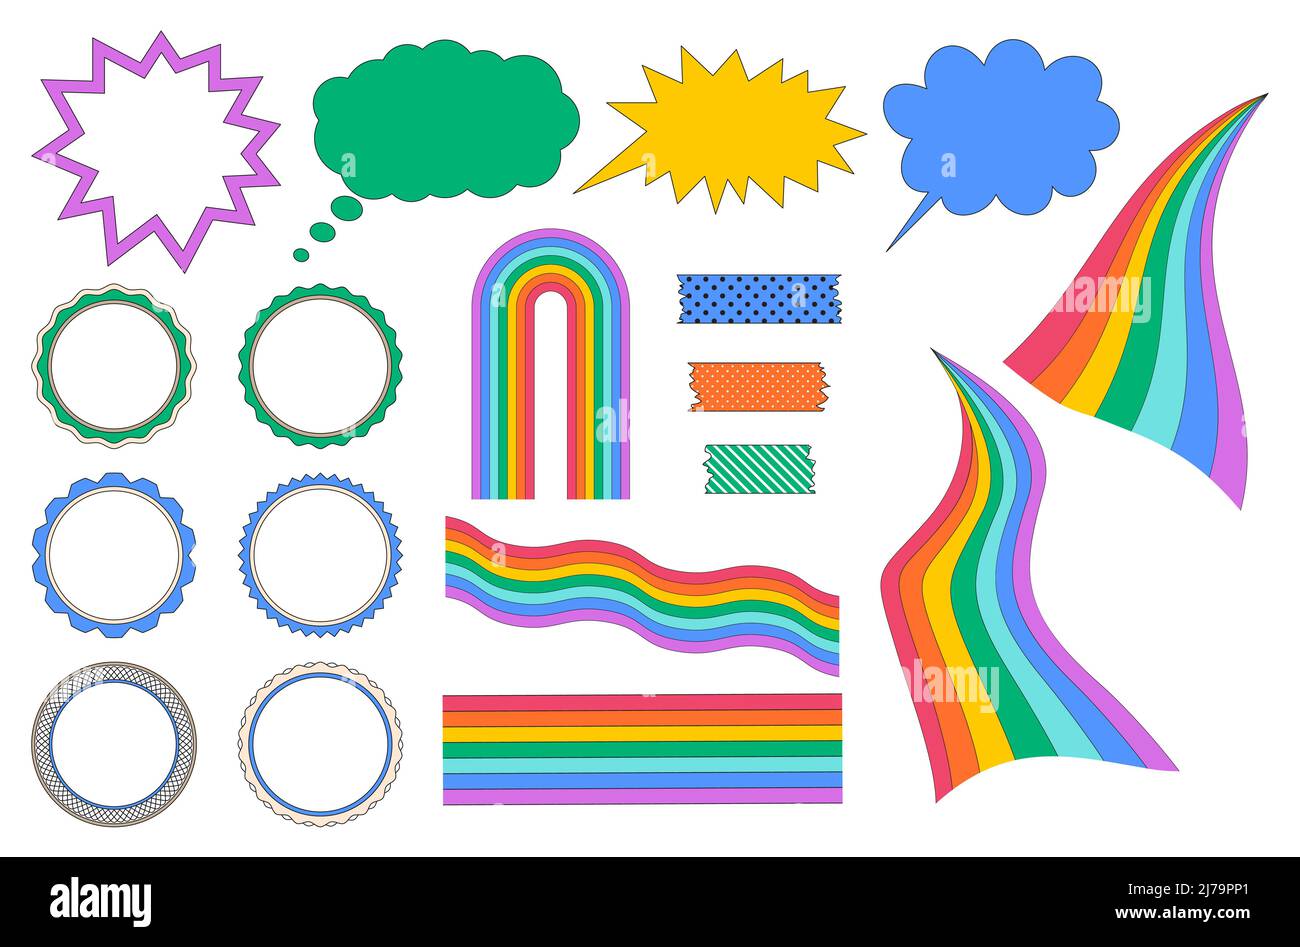 Un insieme di elementi decorativi con un tratto, arcobaleni ondulati, nastro modellato, cornici, una bolla del parlato, una nuvola di pensiero. Illustrazione vettoriale di colore chiaro Illustrazione Vettoriale